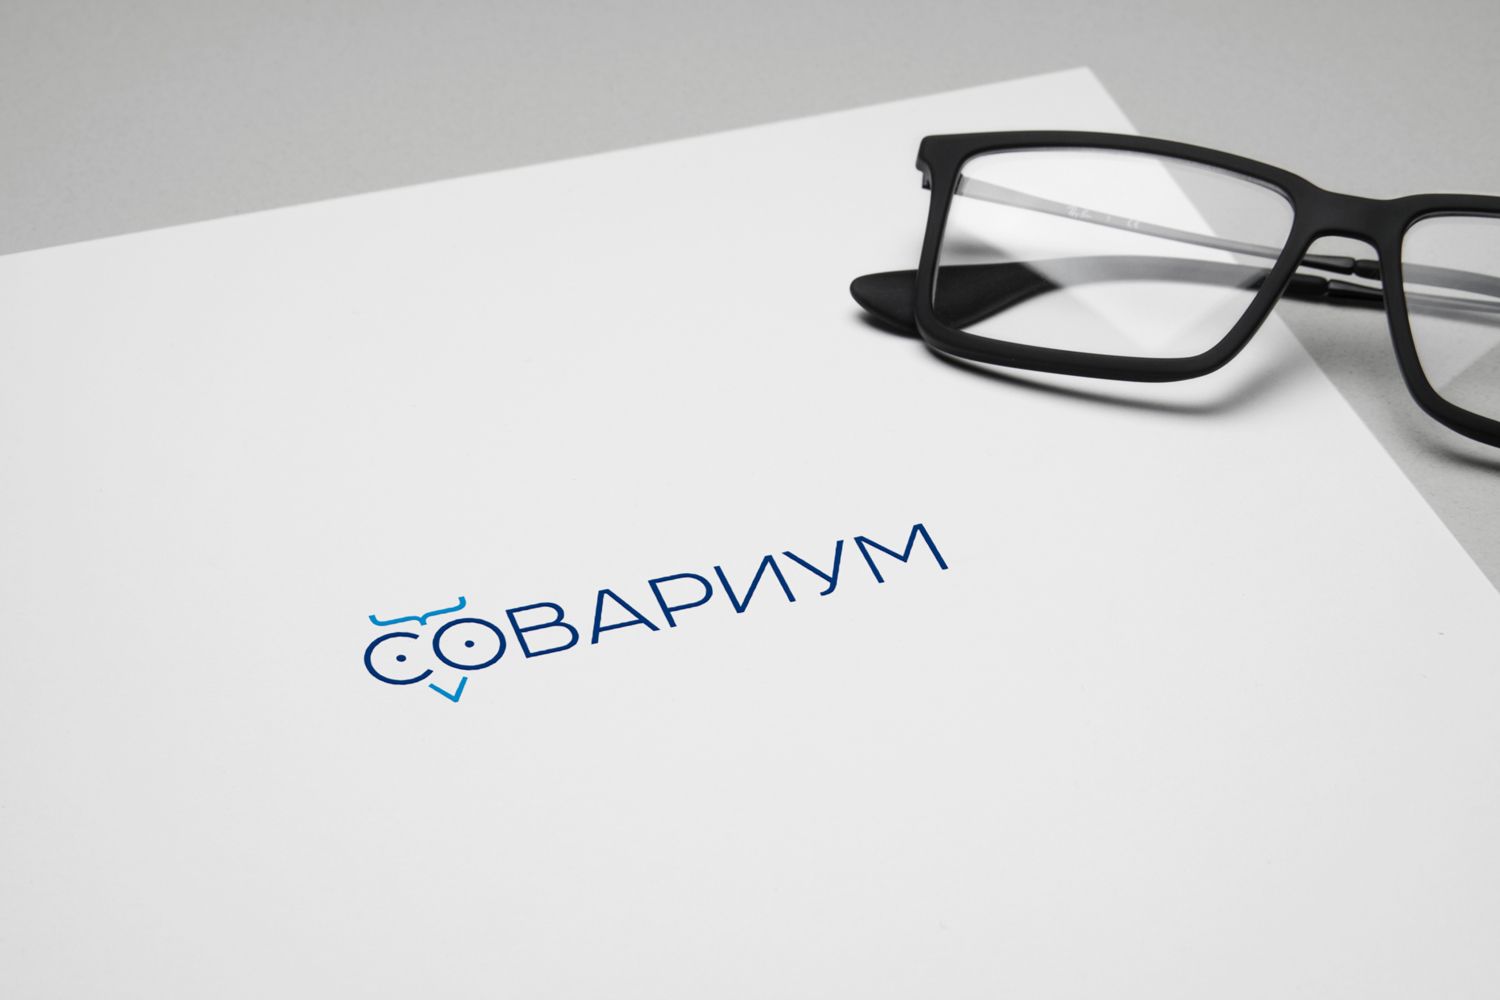 Логотип для Sovarium/Совариум - дизайнер V_Sofeev